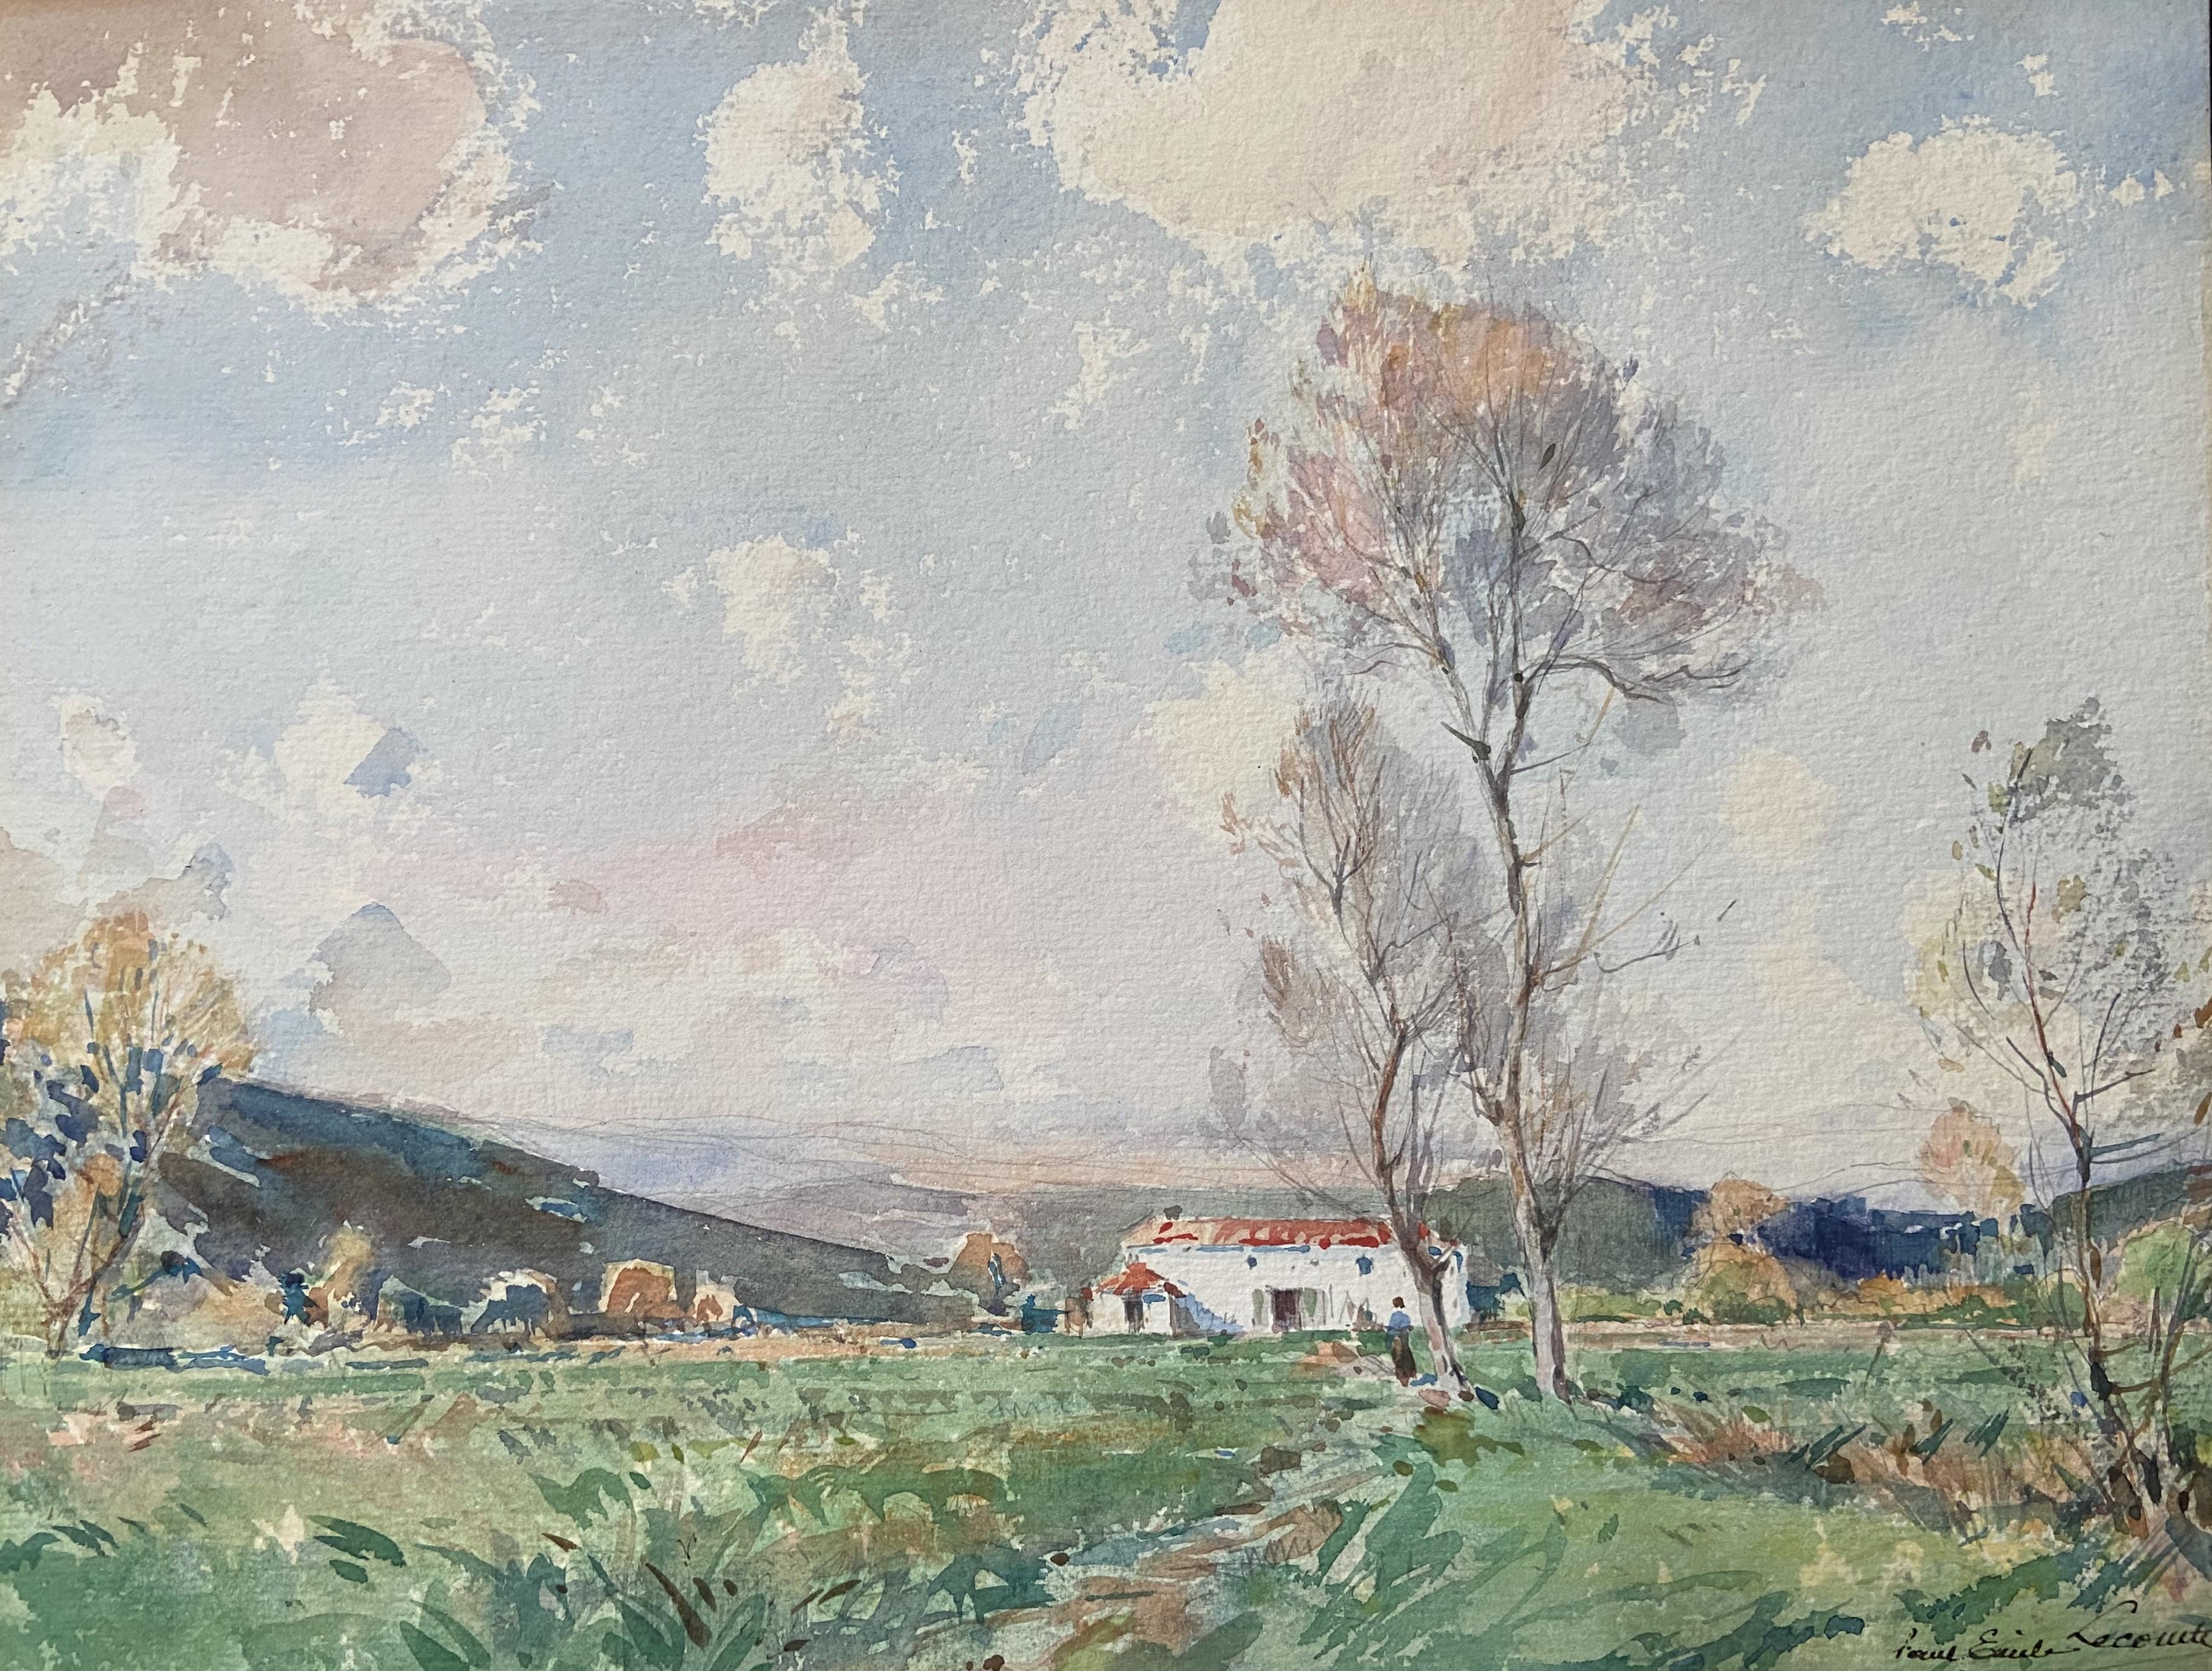 Paul-Emile Lecomte (1877-1950)
Landschaft in einem Tal zwischen Cannes und Grasse (Südfrankreich)
Signiert unten rechts
Aquarell auf Papier
25.8 x 33.9 cm
in einem Vintage-Rahmen : 33 x 41,4 cm
Betitelt und auf der Rückseite der Rahmung angebracht,